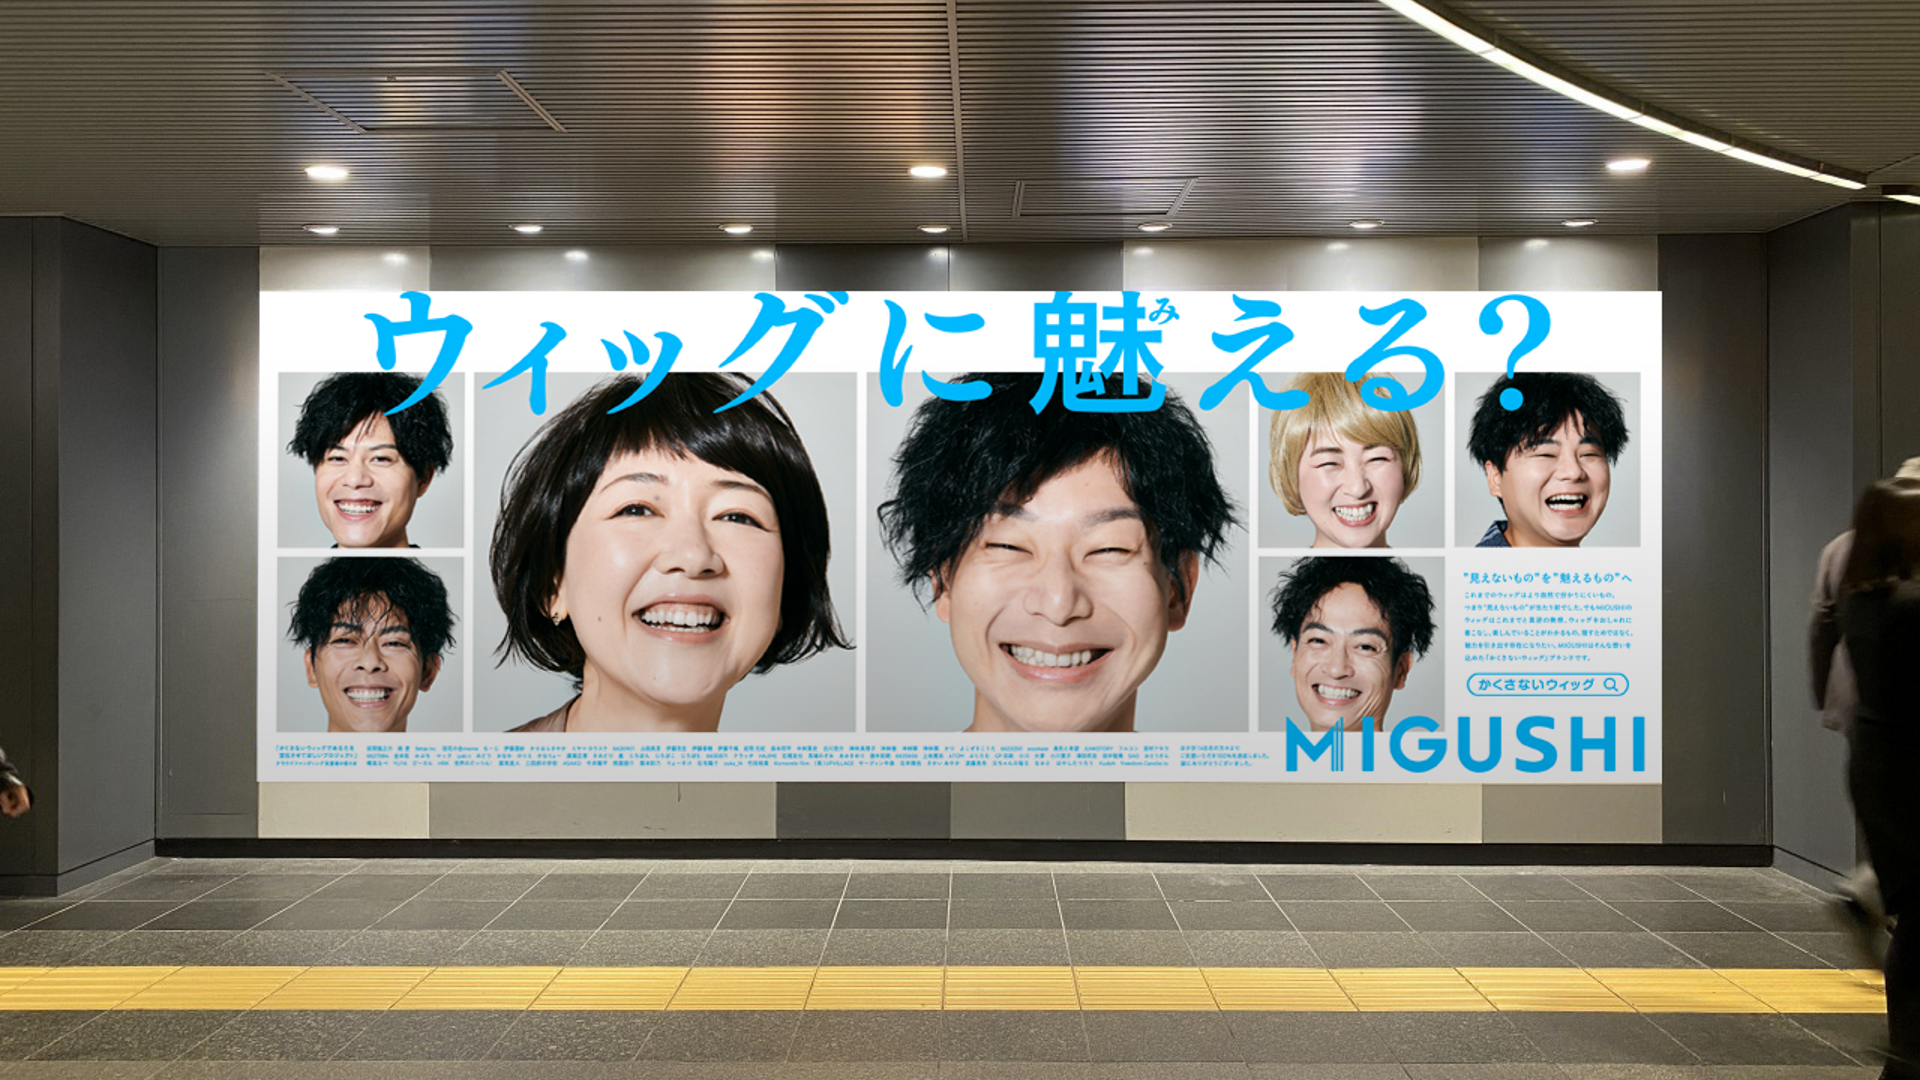 ウィッグは隠さずに「見せる」時代に！ 渋谷駅でウィッグの価値を再定義する広告が掲示中